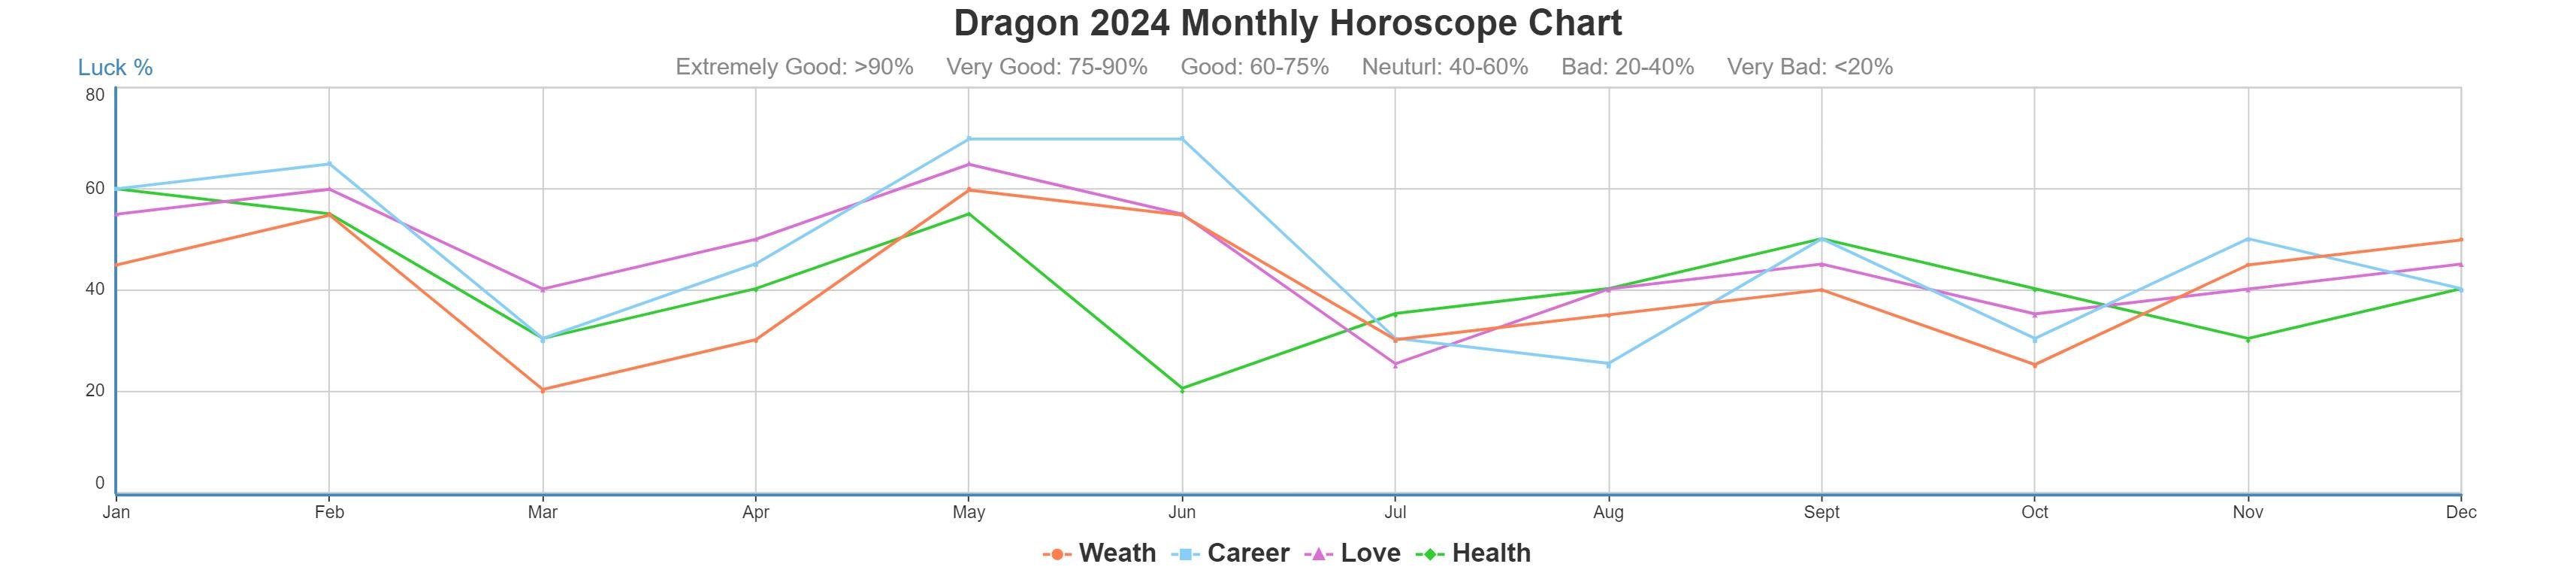 Dragon 2024 monthly horoscope